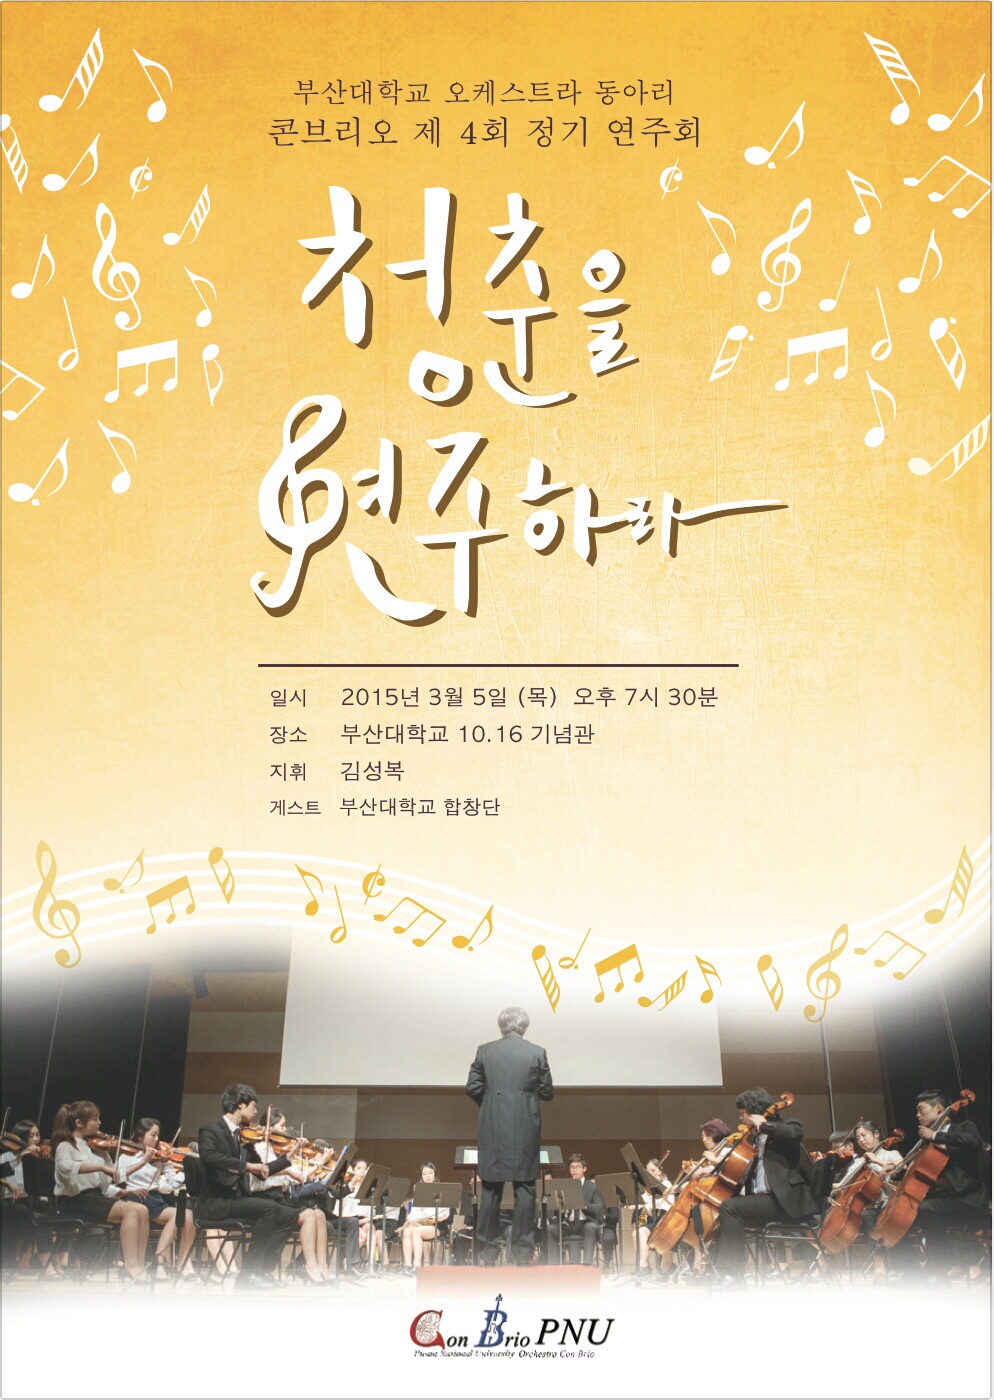 image.jpg : 부산대학교 비전공자 오케스트라 콘브리오 정기연주회로 초대합니다.